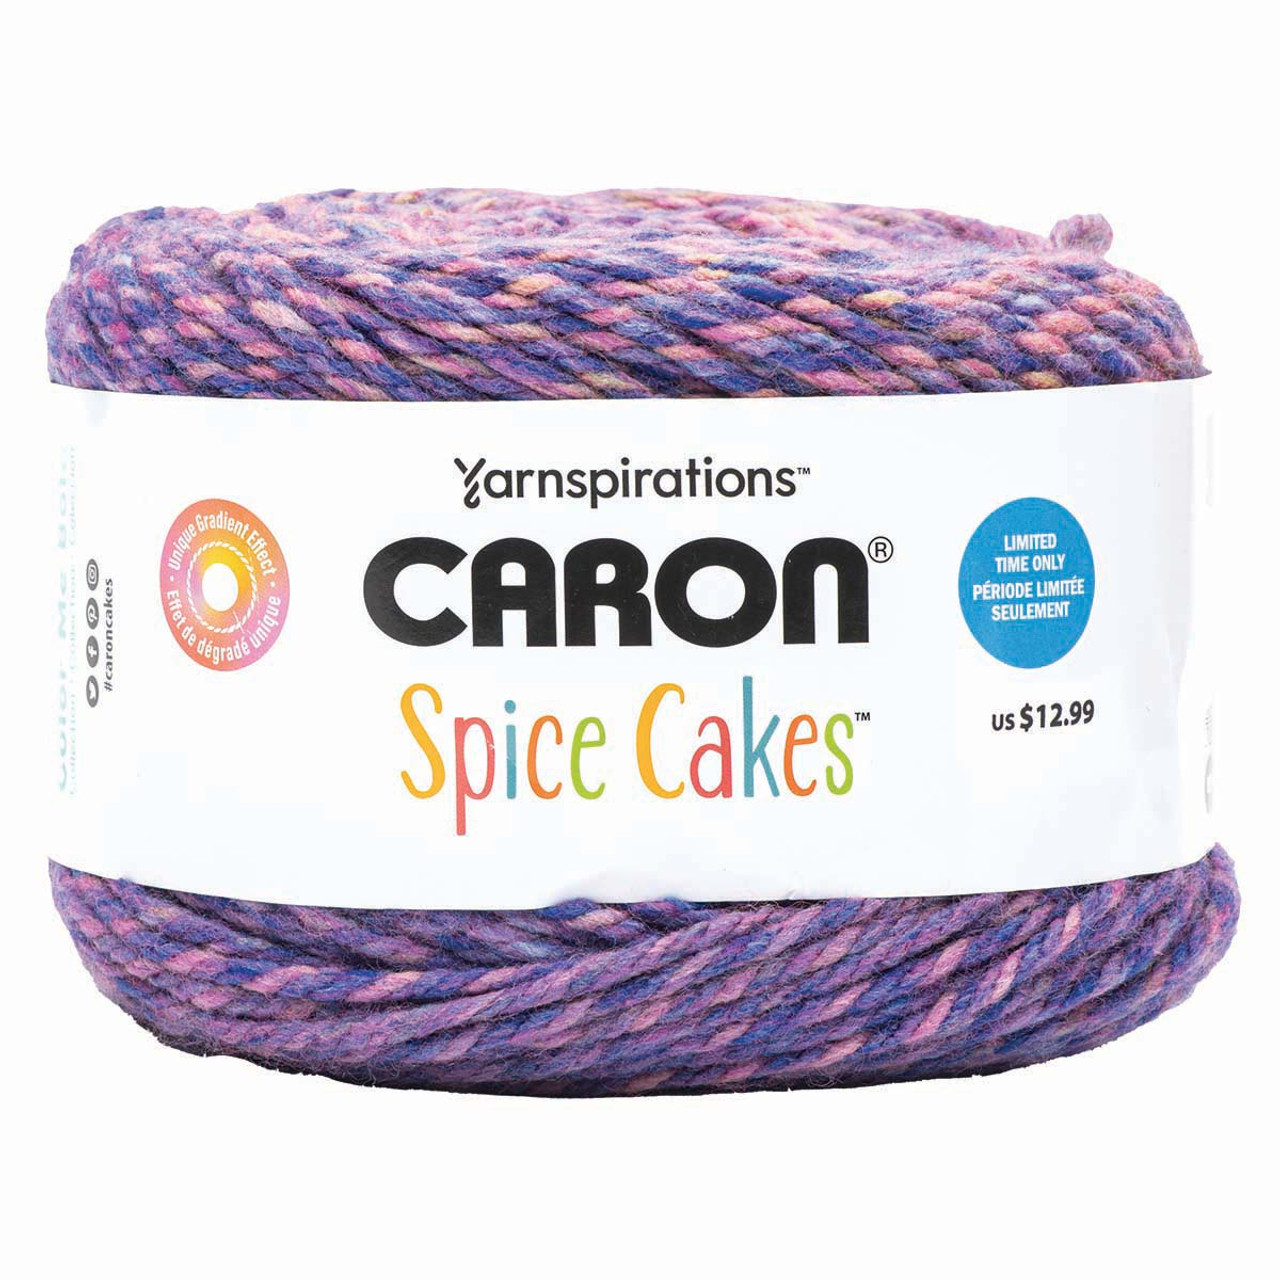 NEW Caron Cakes 